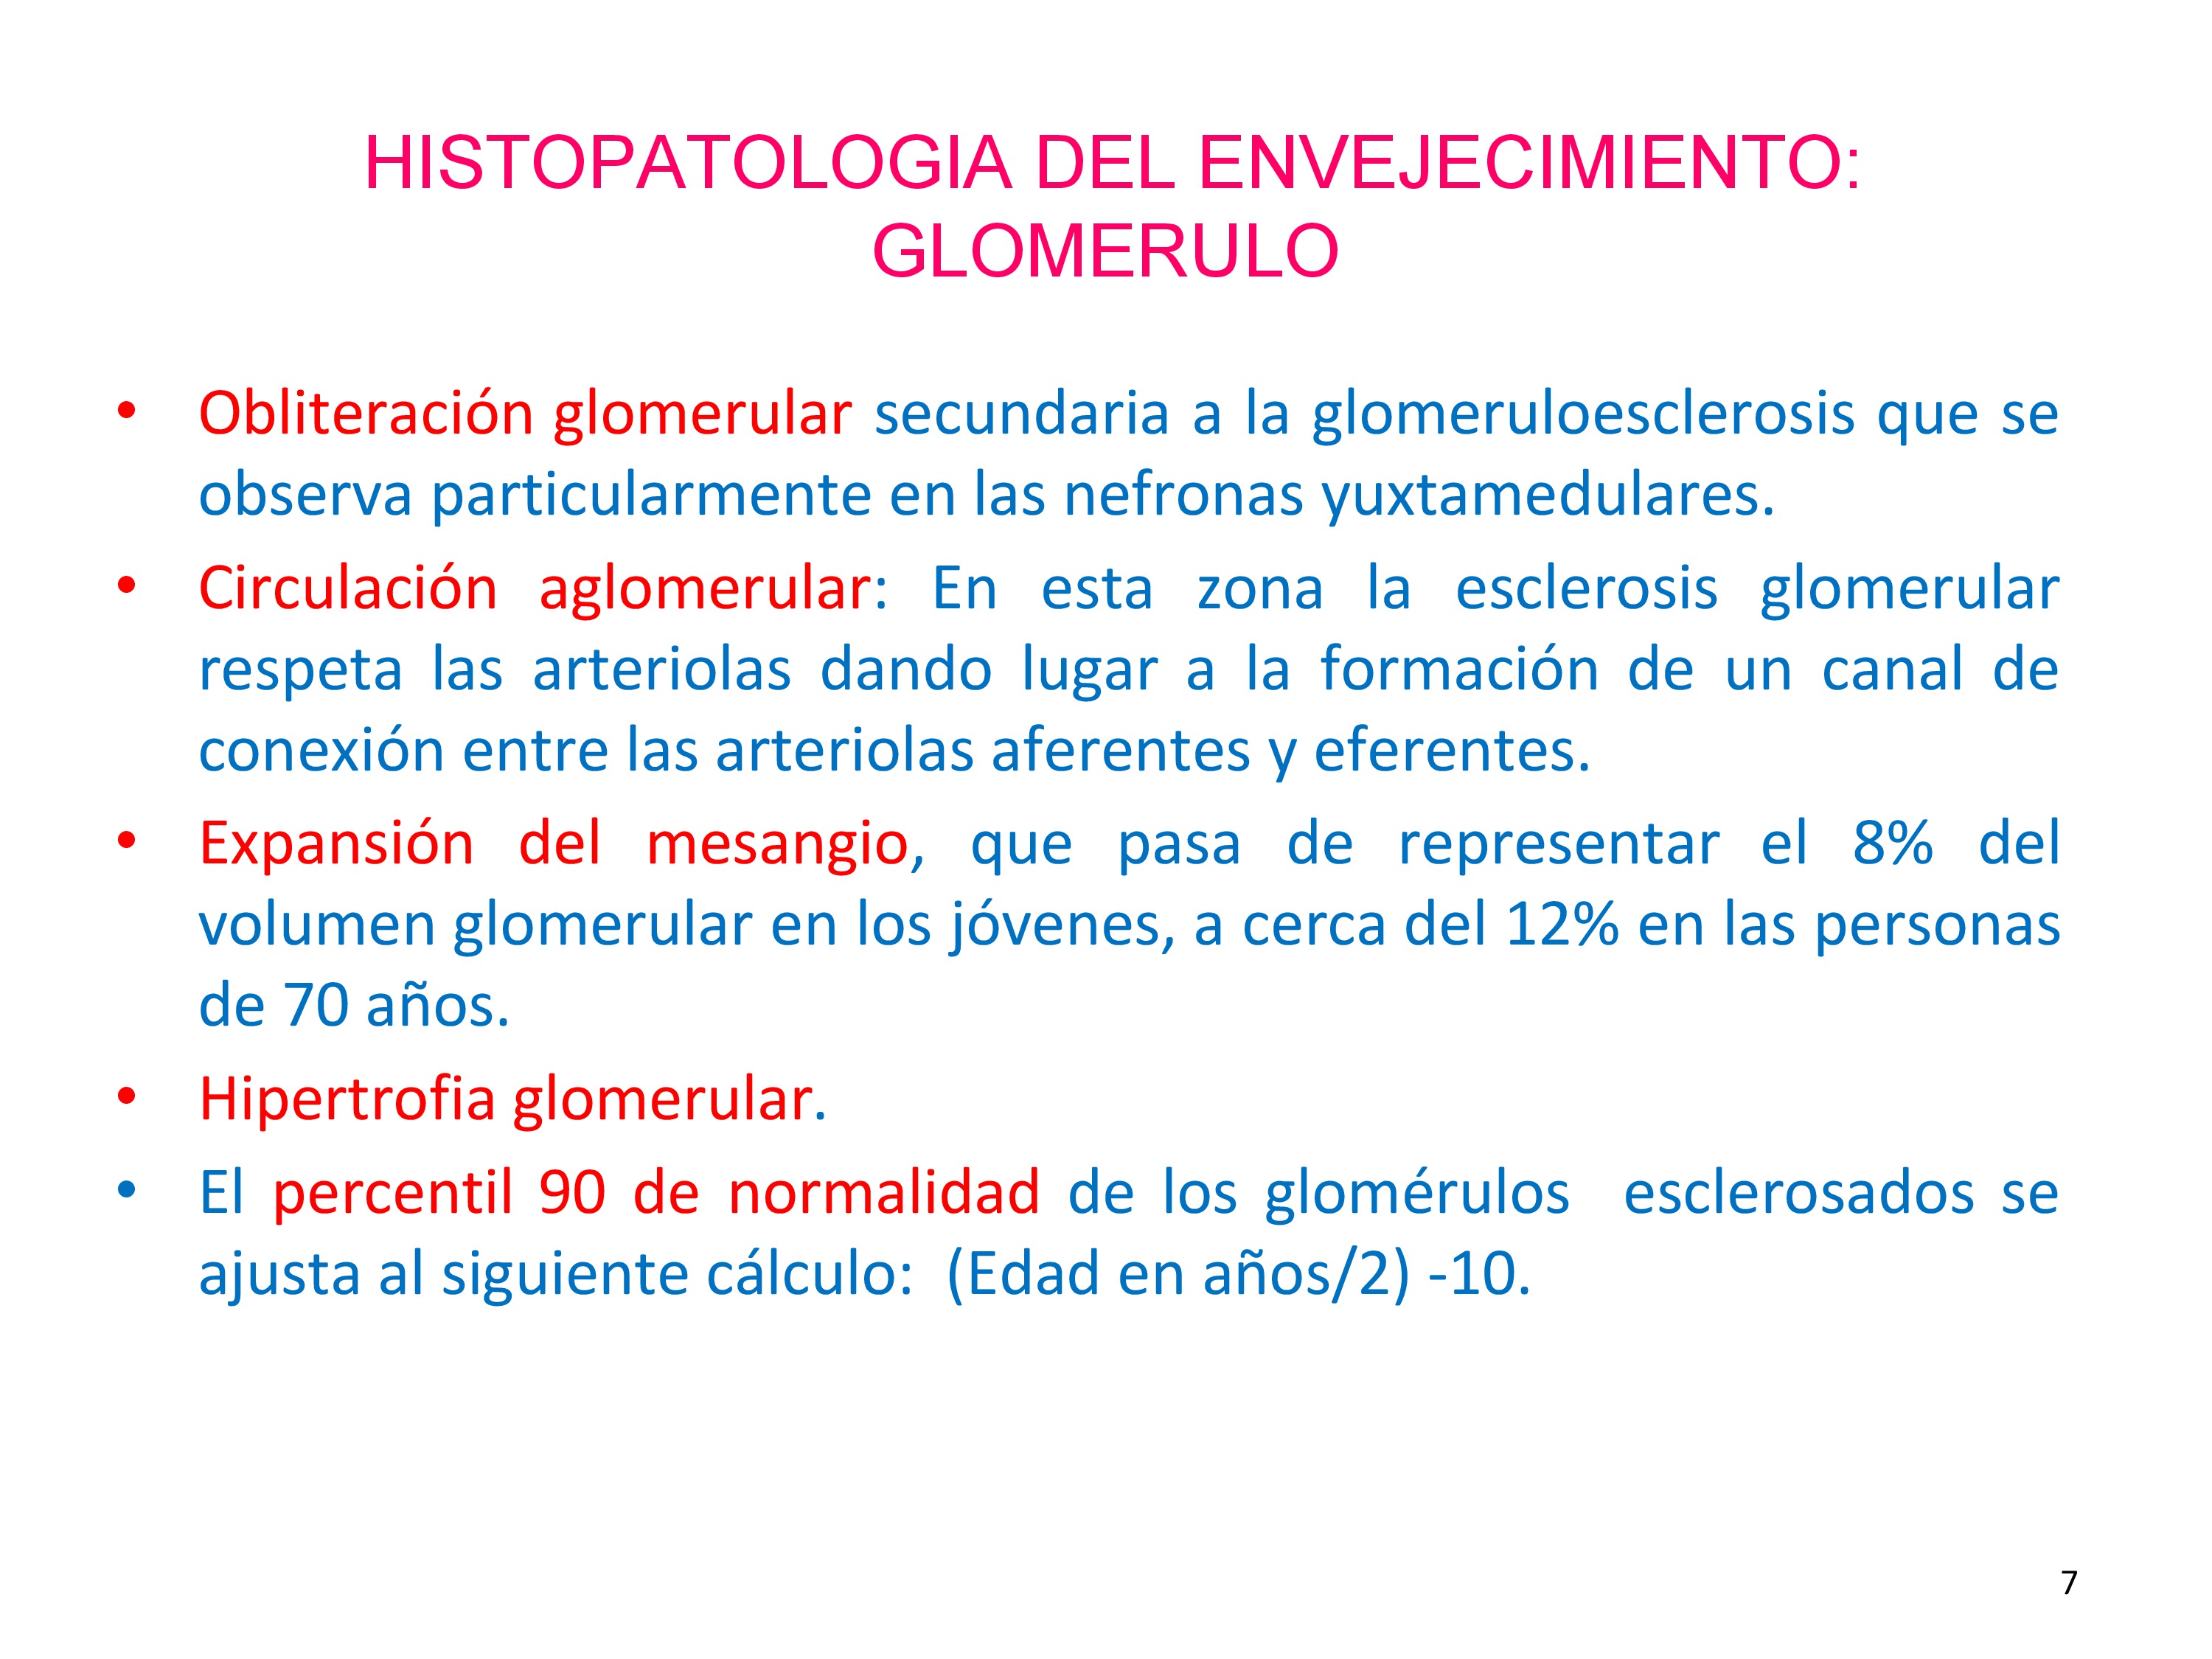 El glomérulo es una estructura de la que forman parte varios tipos celulares.